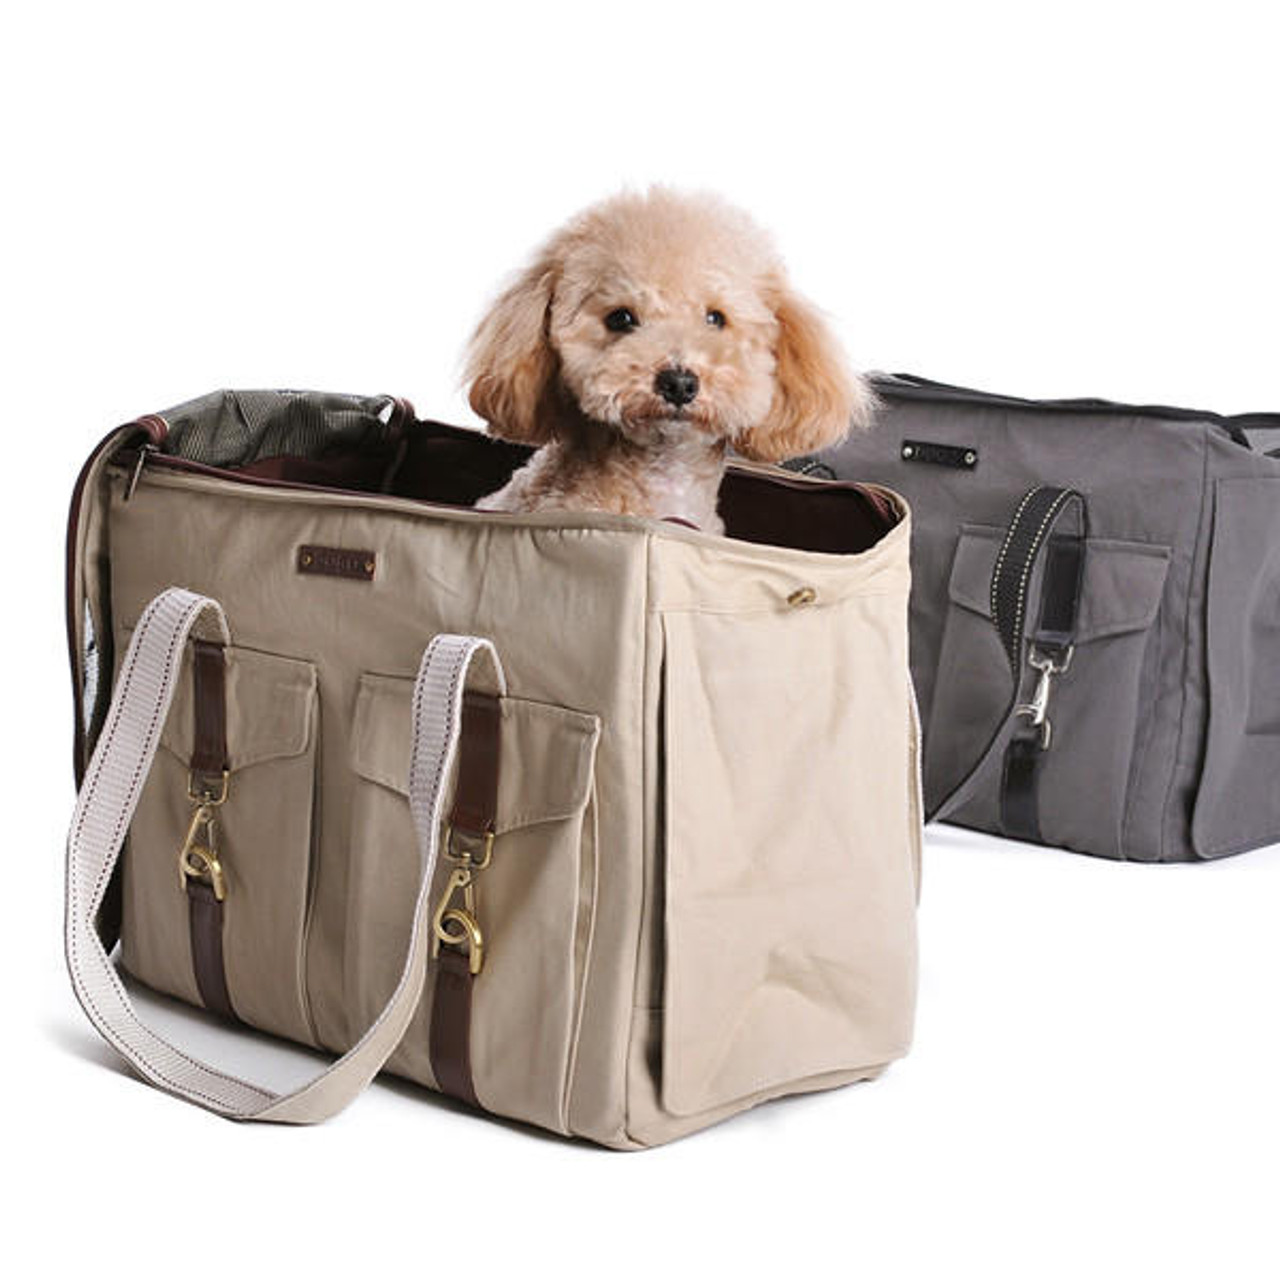 Beige Marlee 2 Dog Carrier Bag - Buy online